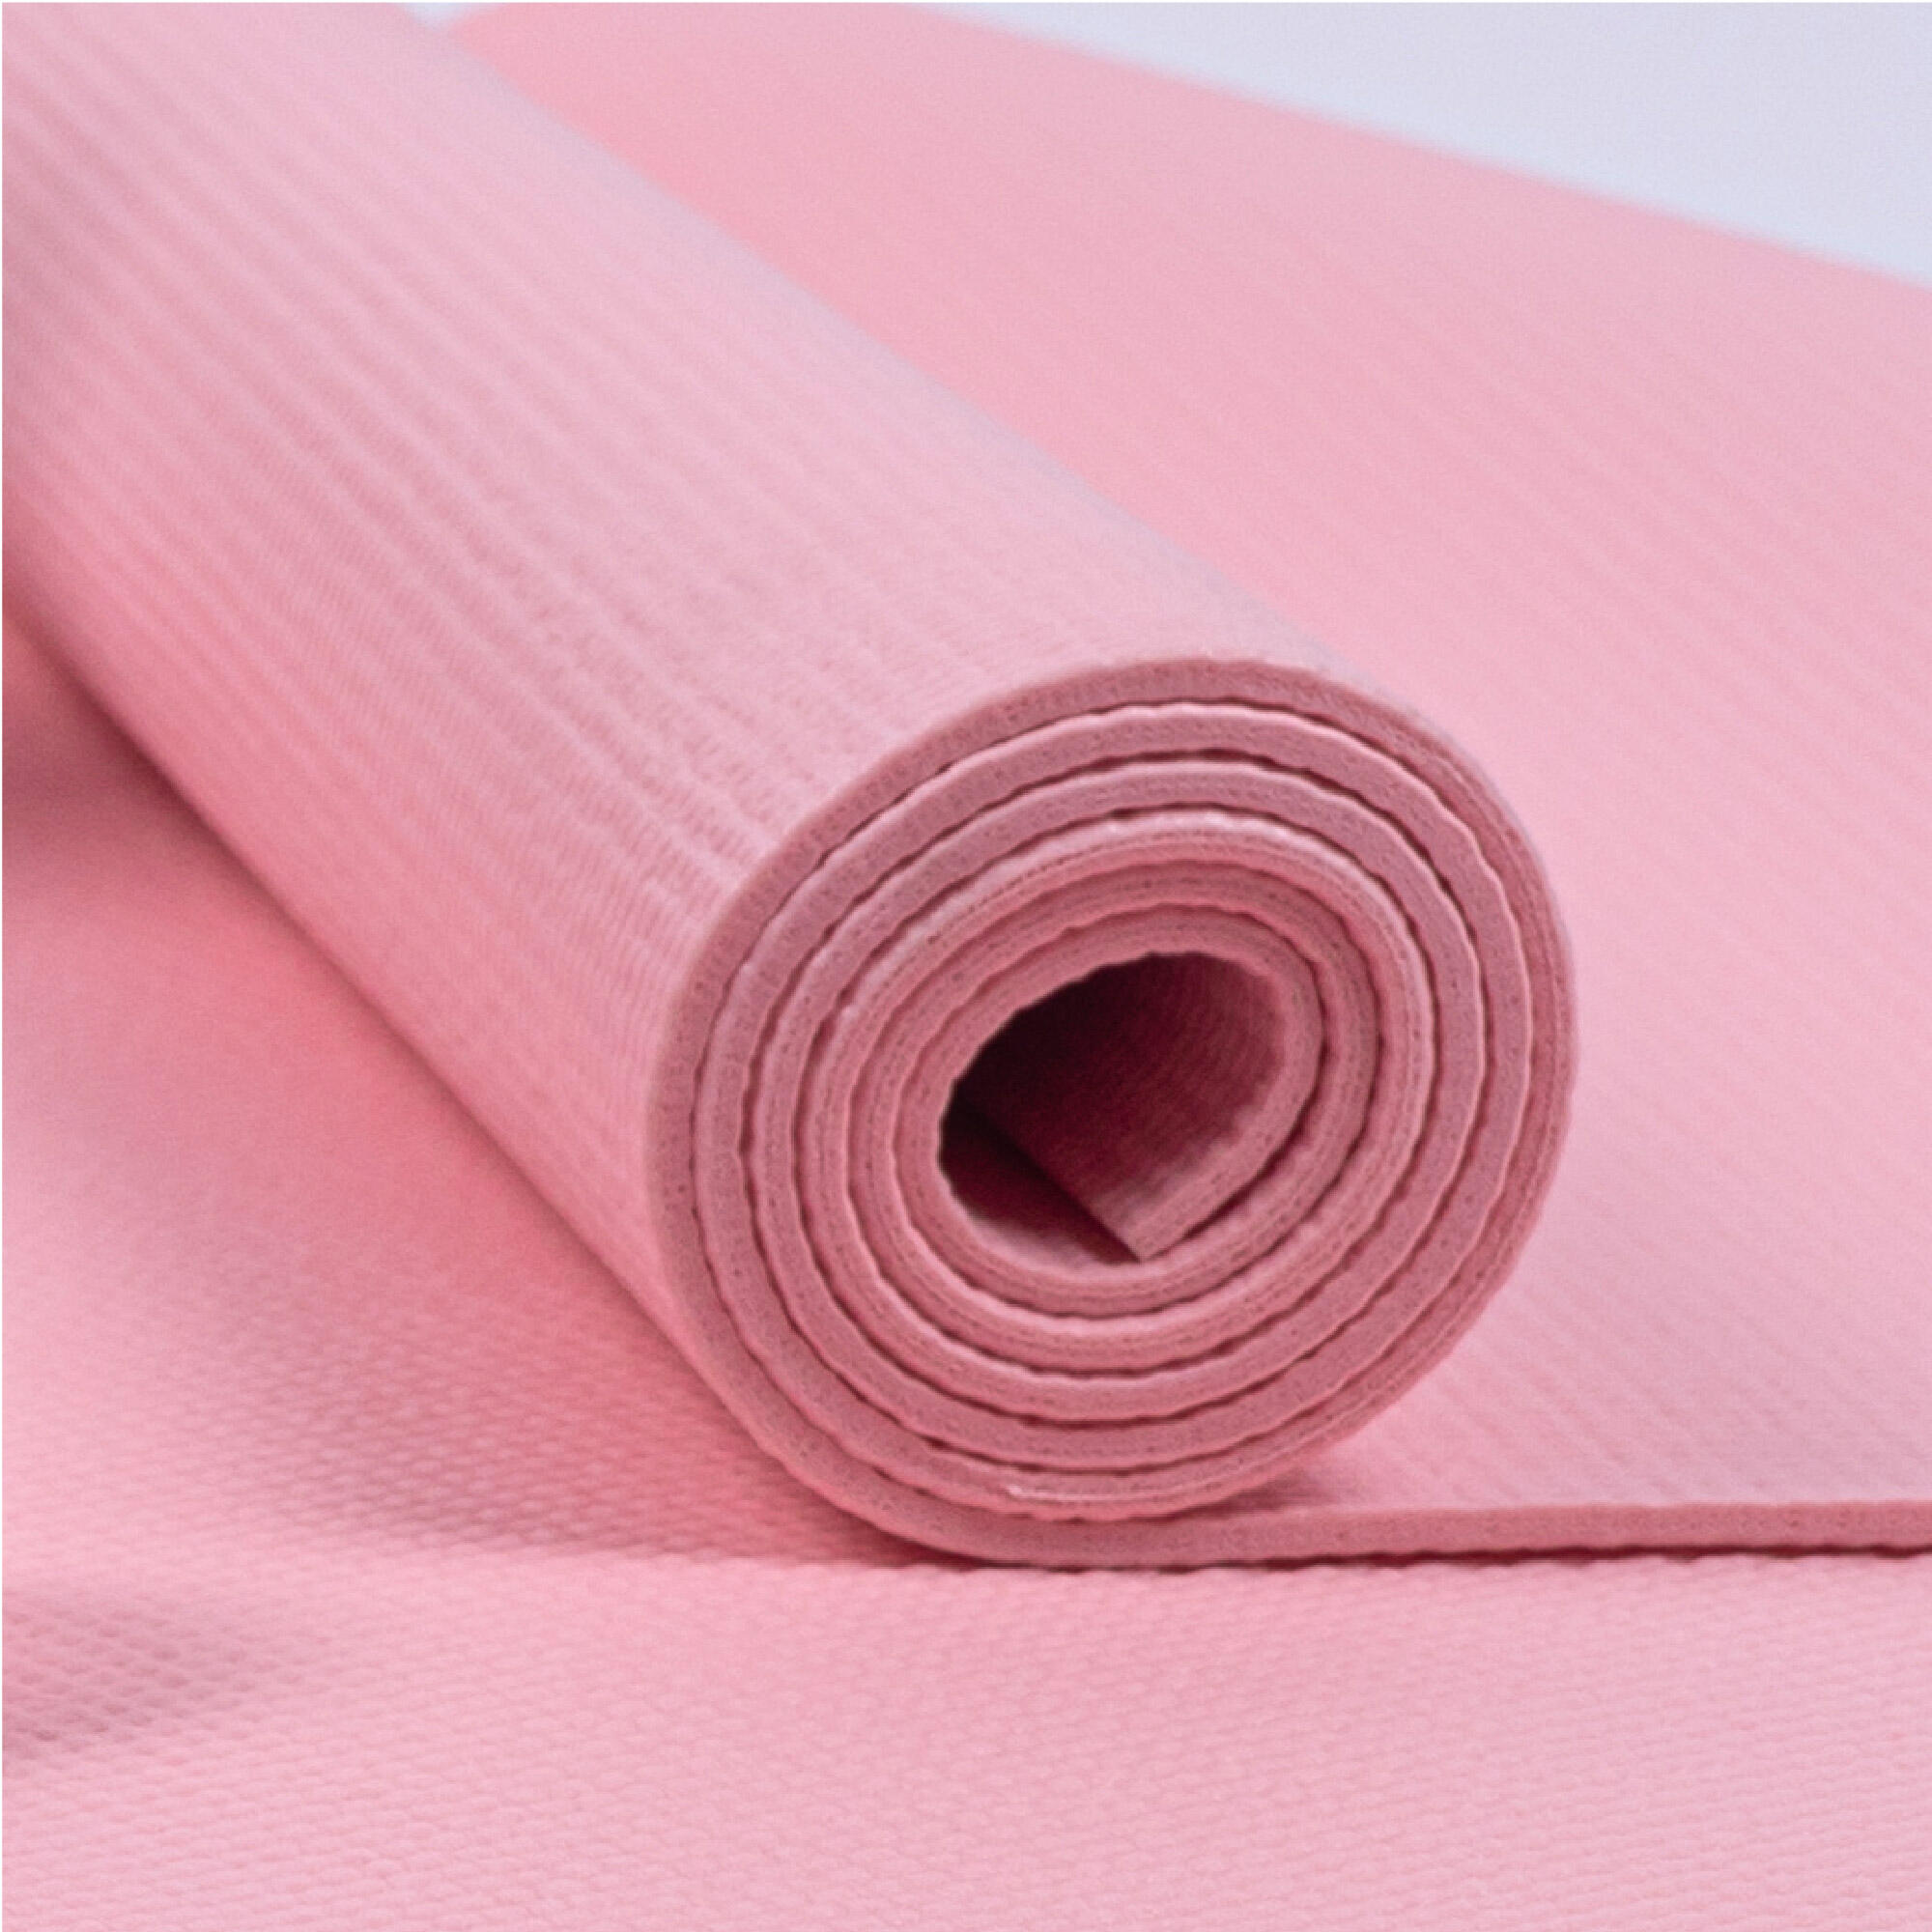 Myga Yoga Starter Kit - Pink 5/8